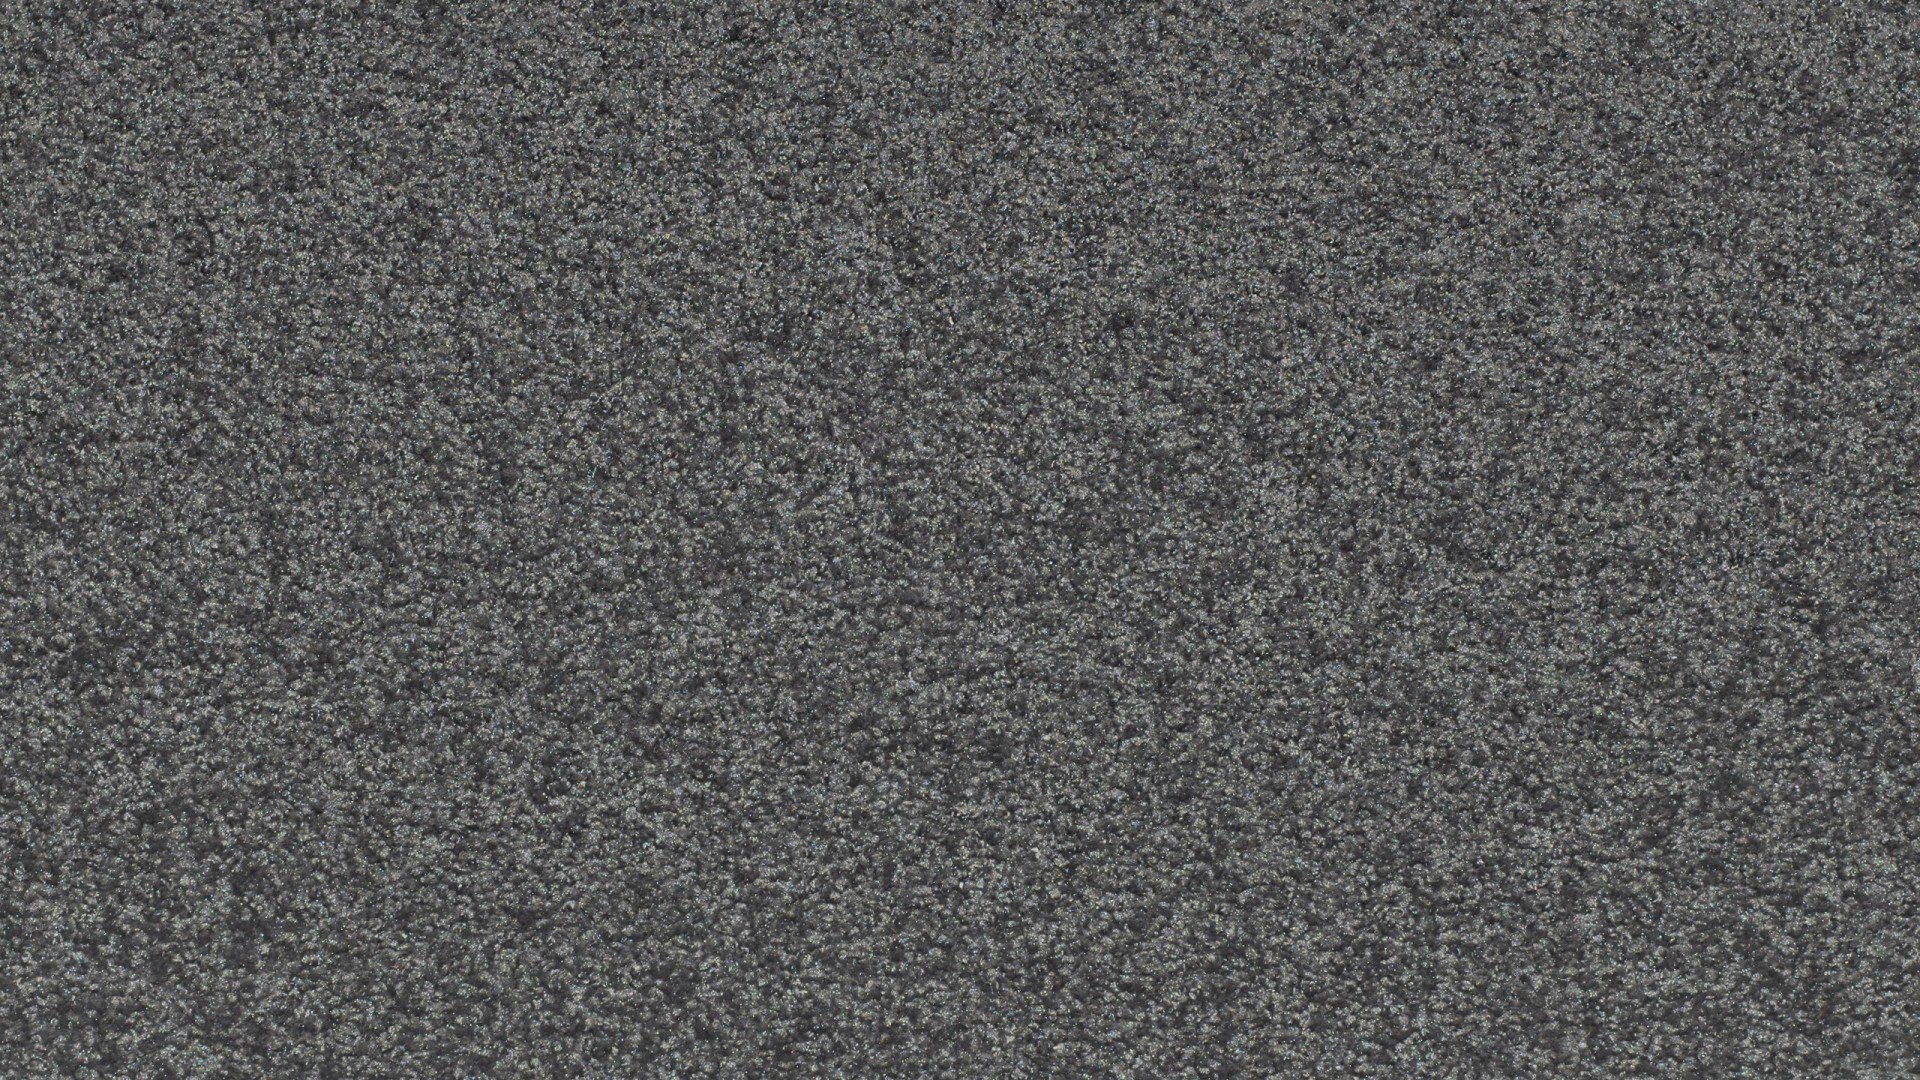 volkswagen wallpaper,nero,grigio,asfalto,modello,pavimentazione